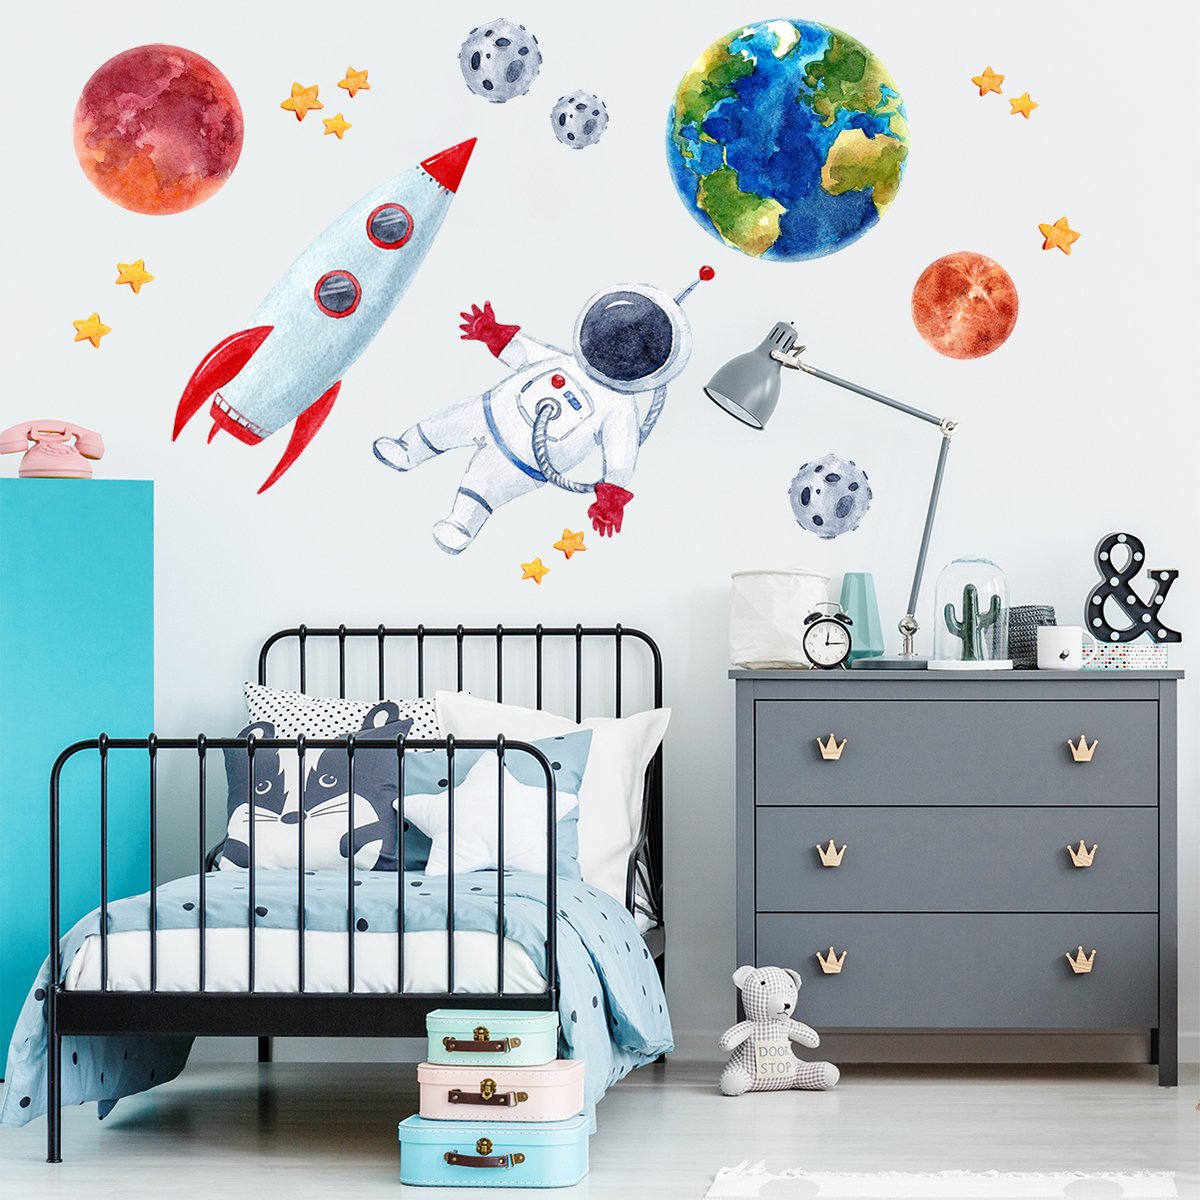 Naklejki na ścianę do pokoju chłopca kosmos, galaktyka, planety, ziemia, mars i rakieta